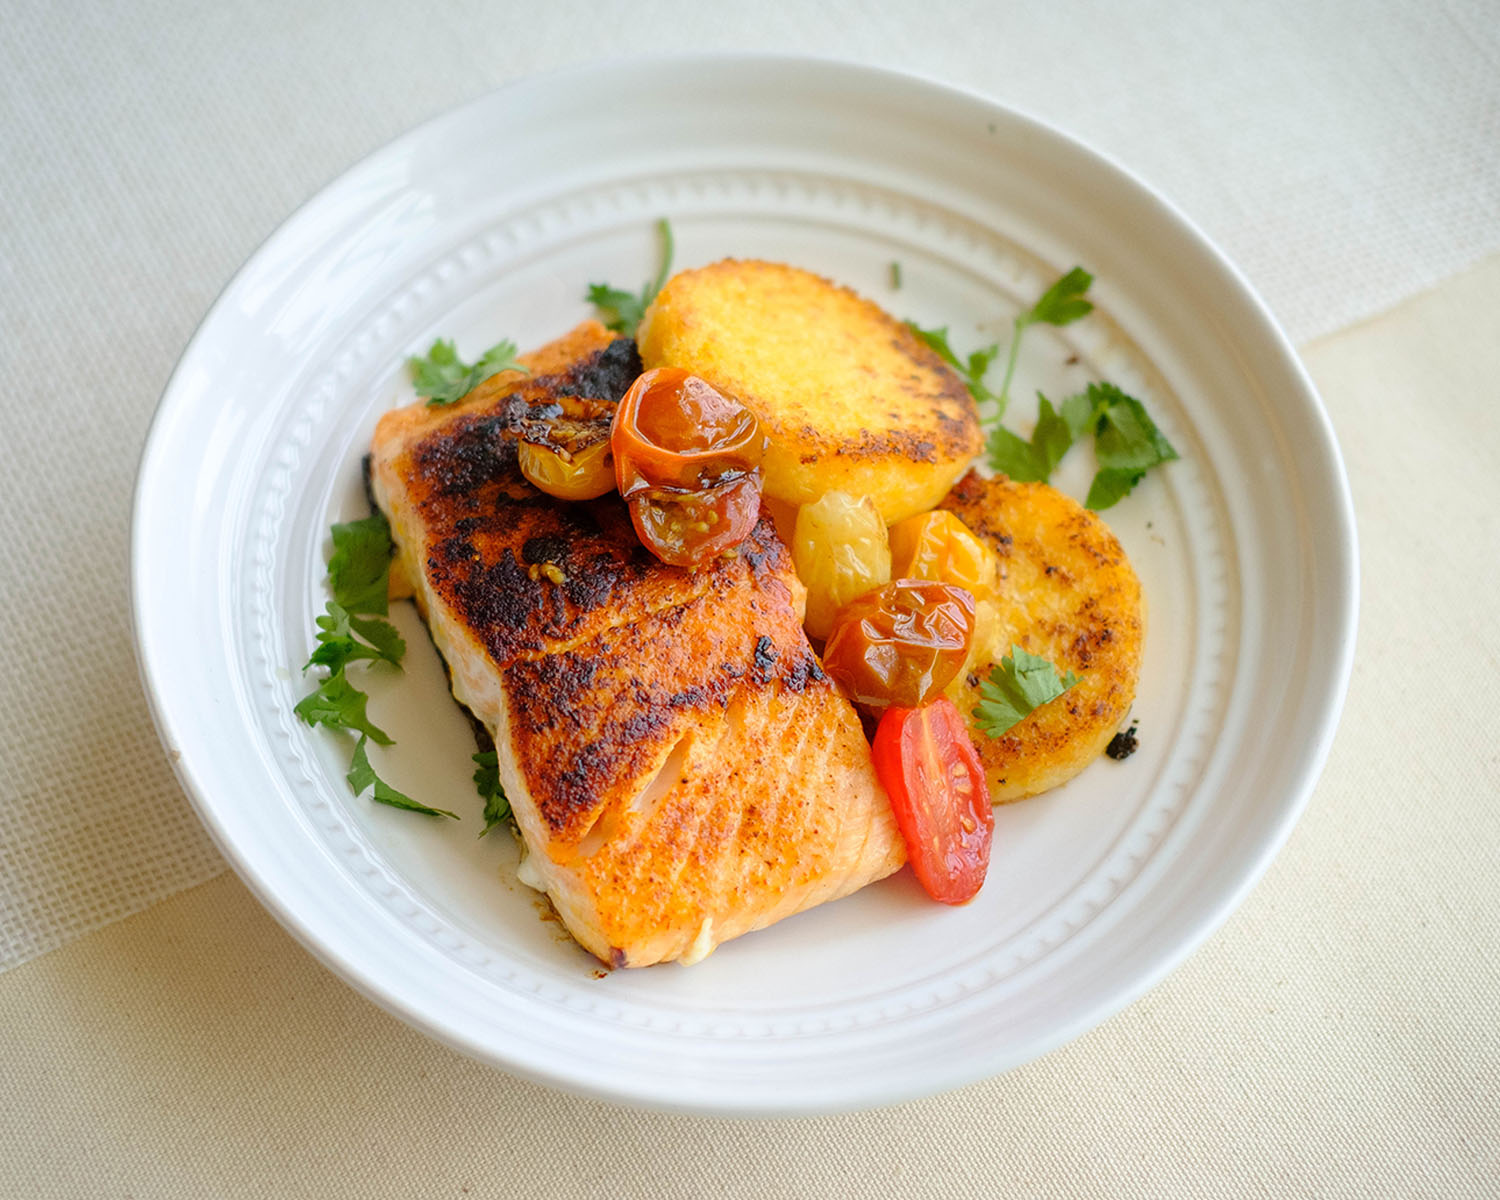 Pan-Fried Salmon with Polenta Cakes - Easy Salmon Recipe